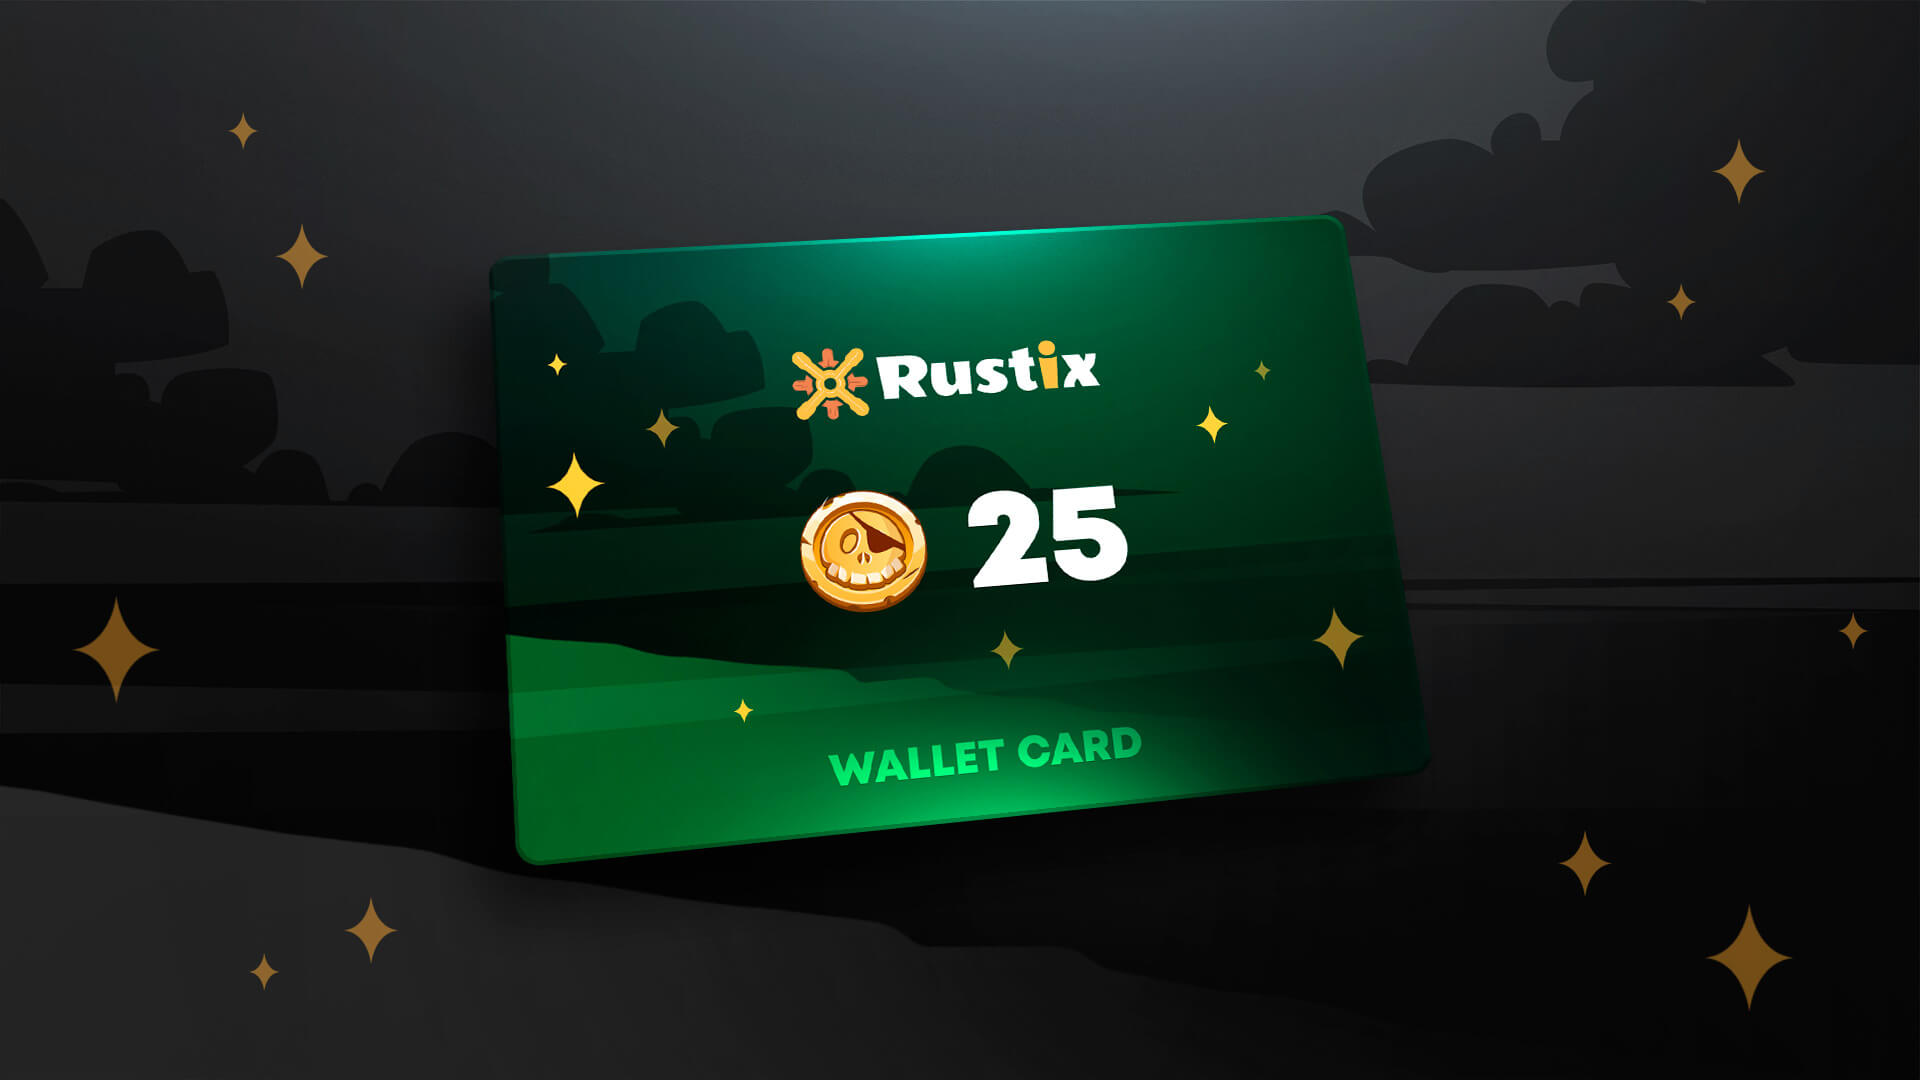 Rustix.io 25 USD Wallet Card Code 28.25 $